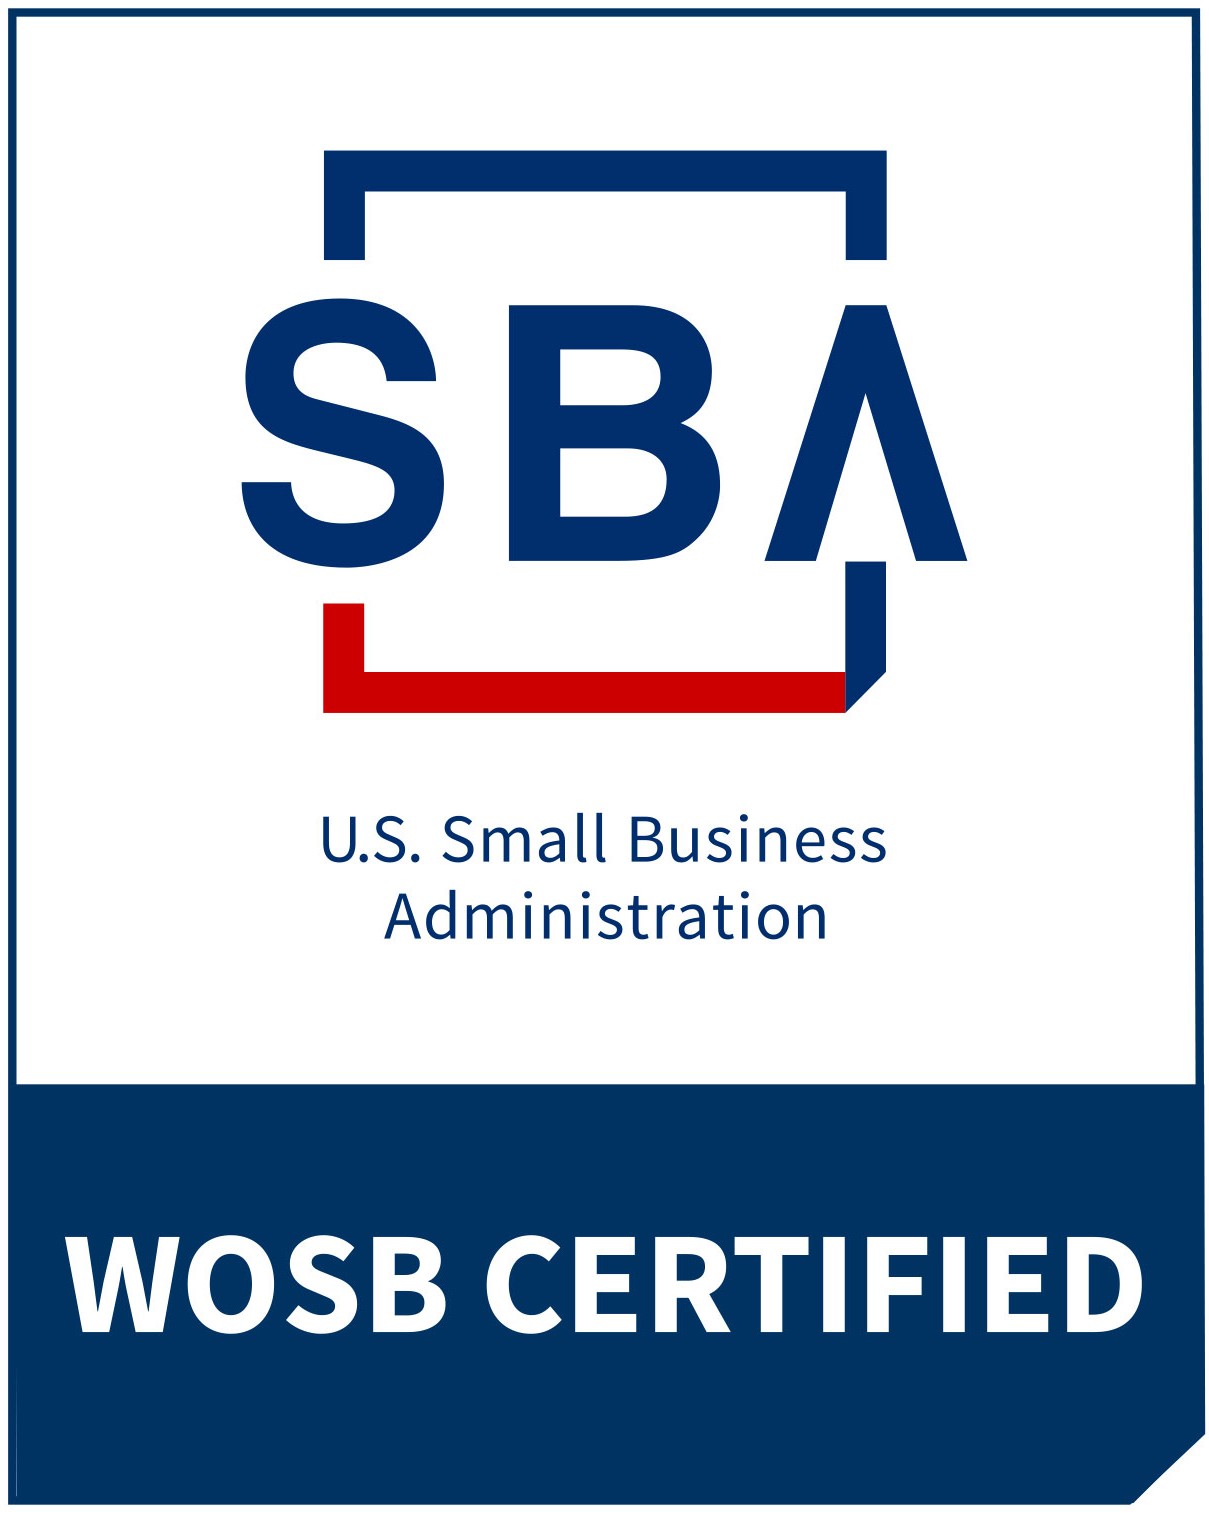 SBA WOSB certified